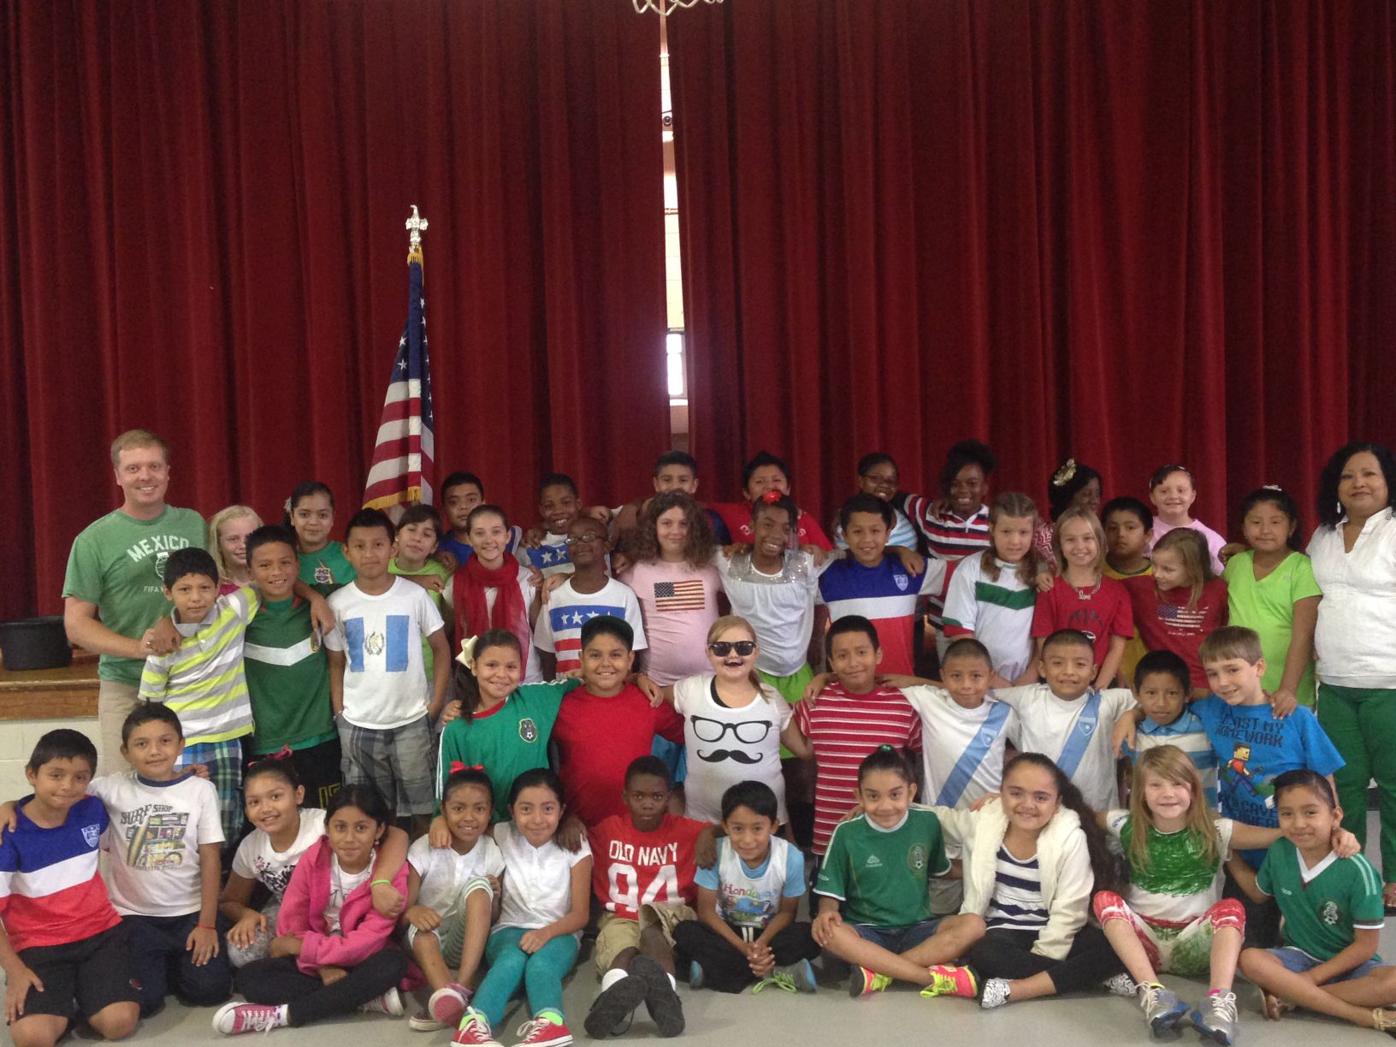 Northside Elementary celebrates Hispanic Heritage Month